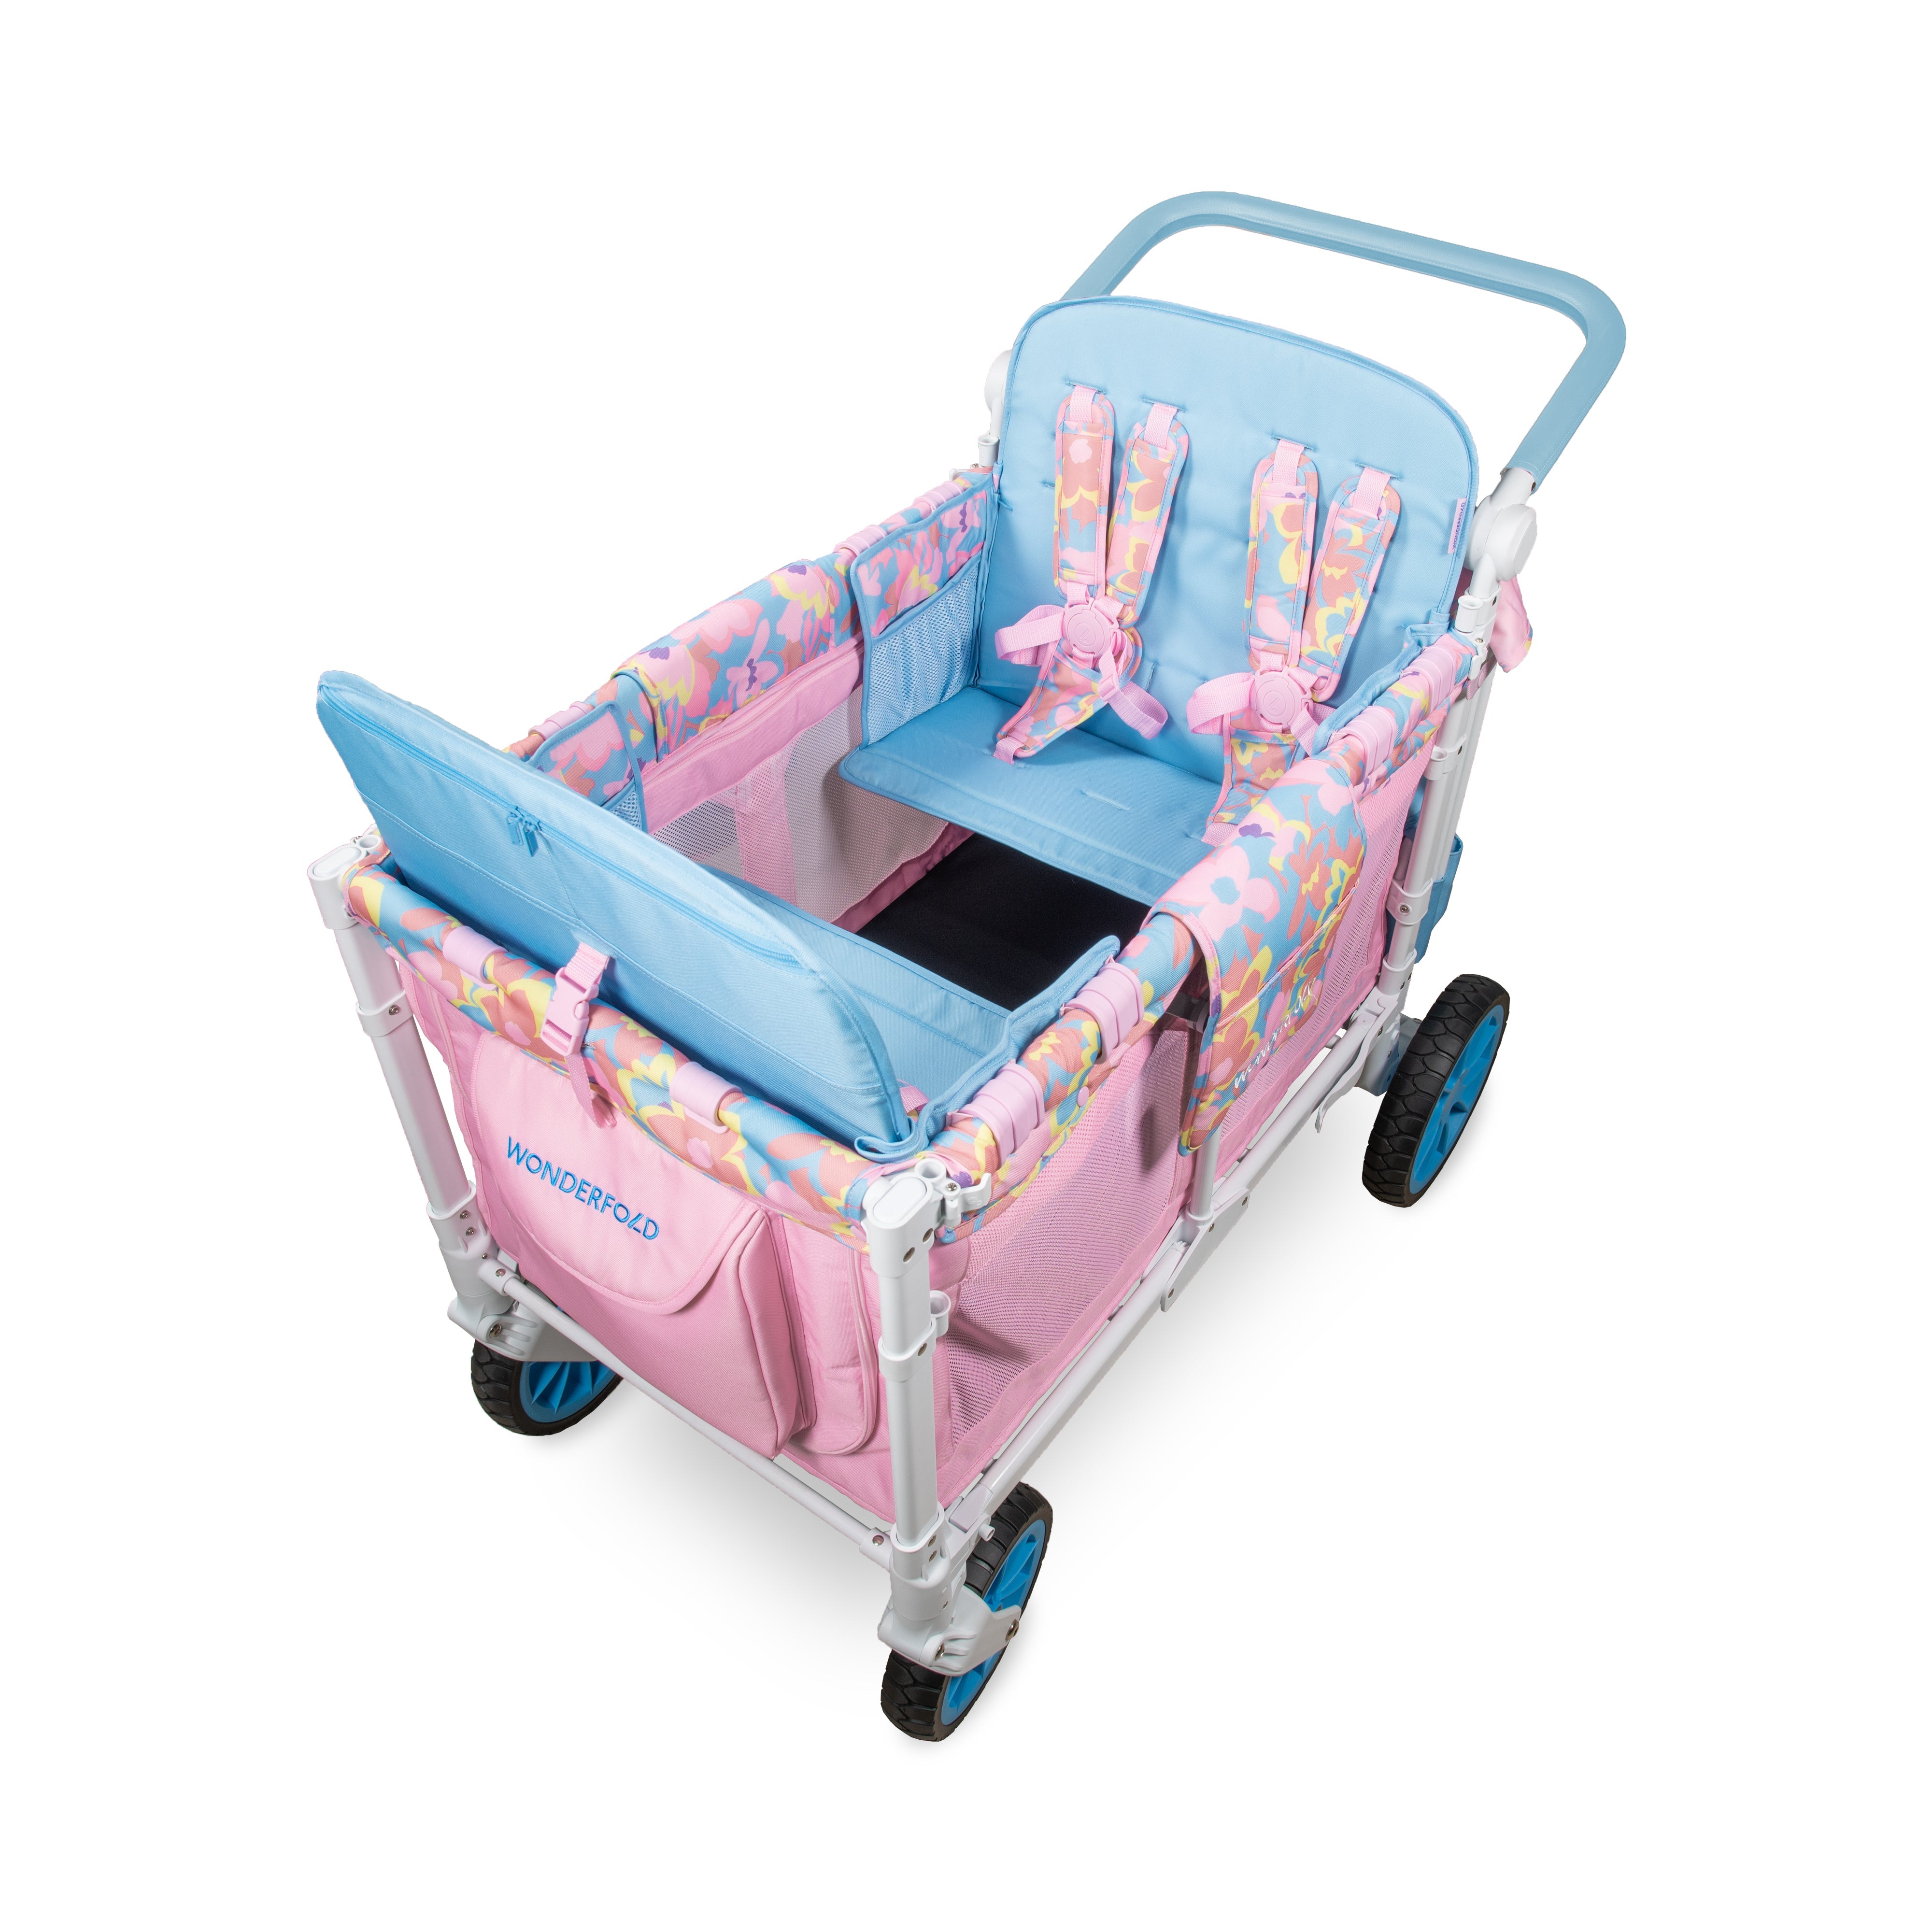 W4 Petal Pop Stroller Wagon (Limited Edition)